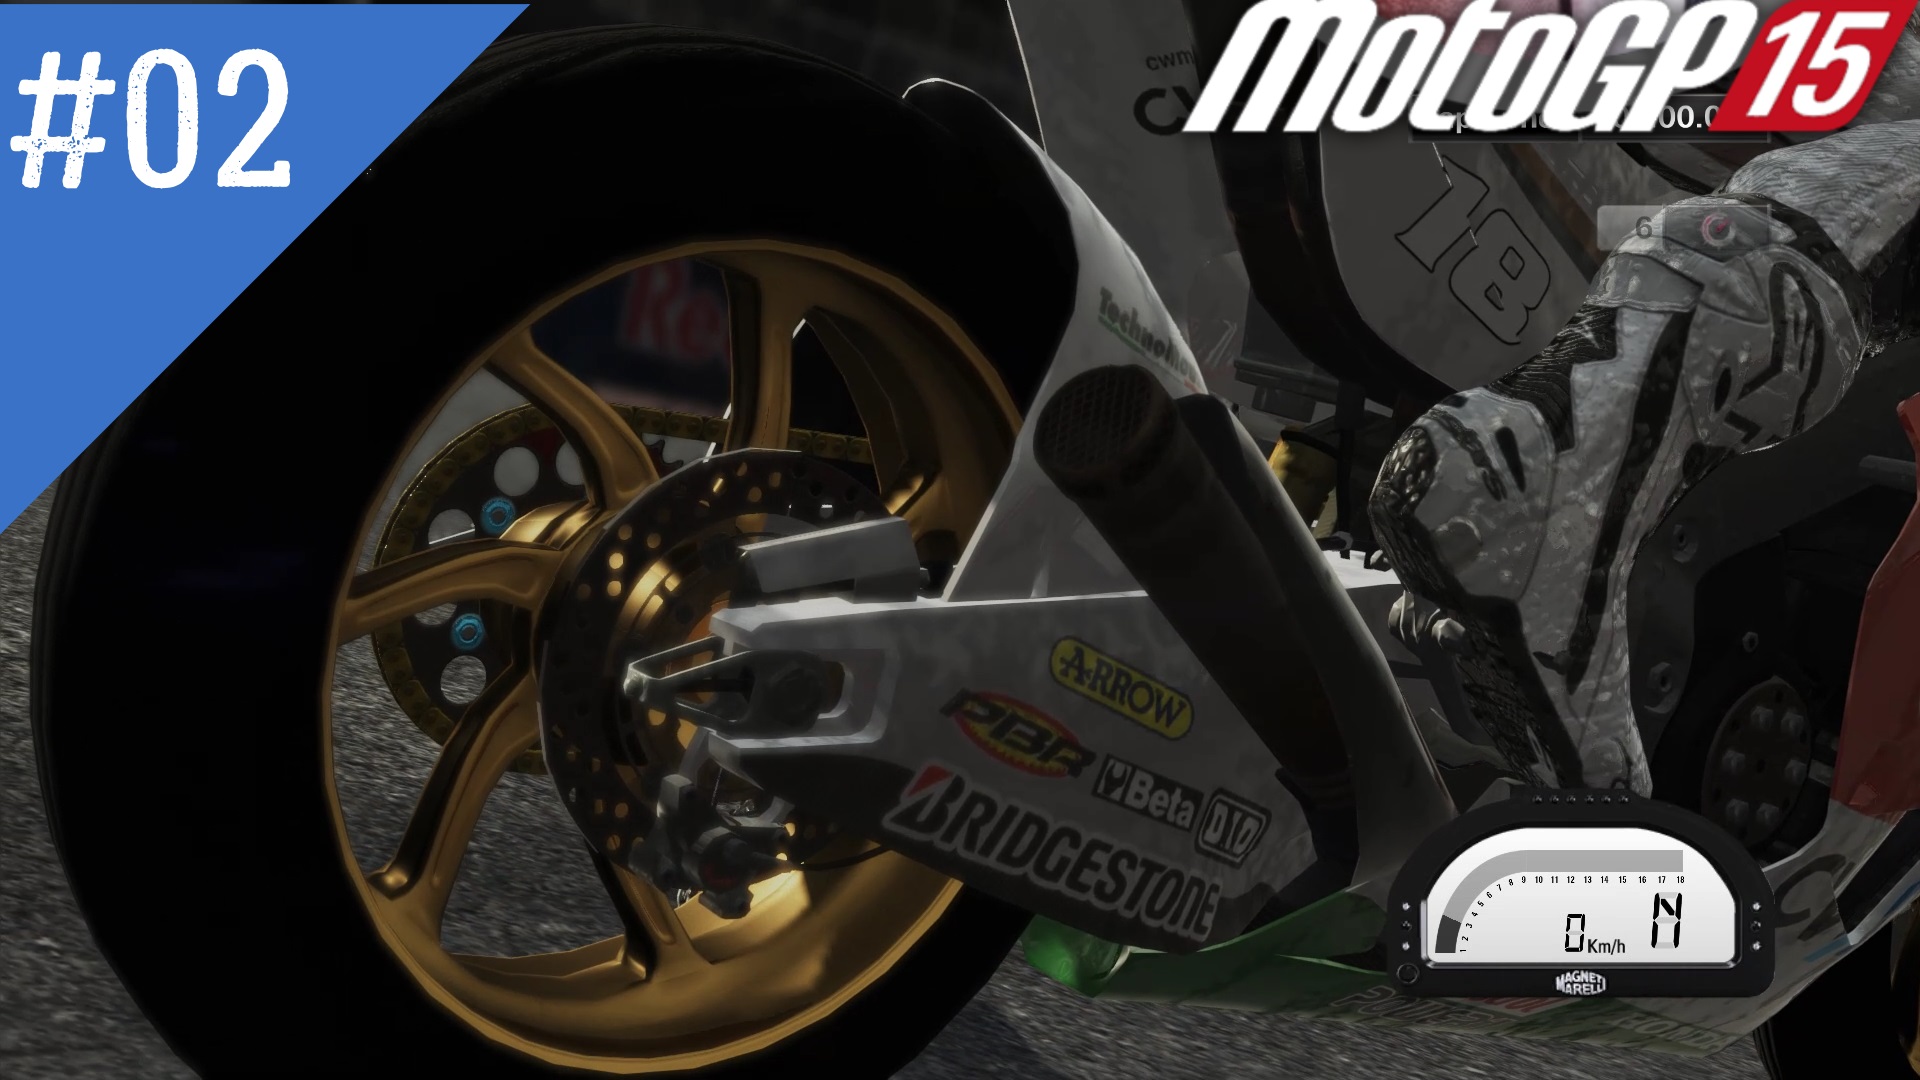 Honda - #2 Austin USA - Прохождение игры MotoGP15 | Dualshock 4